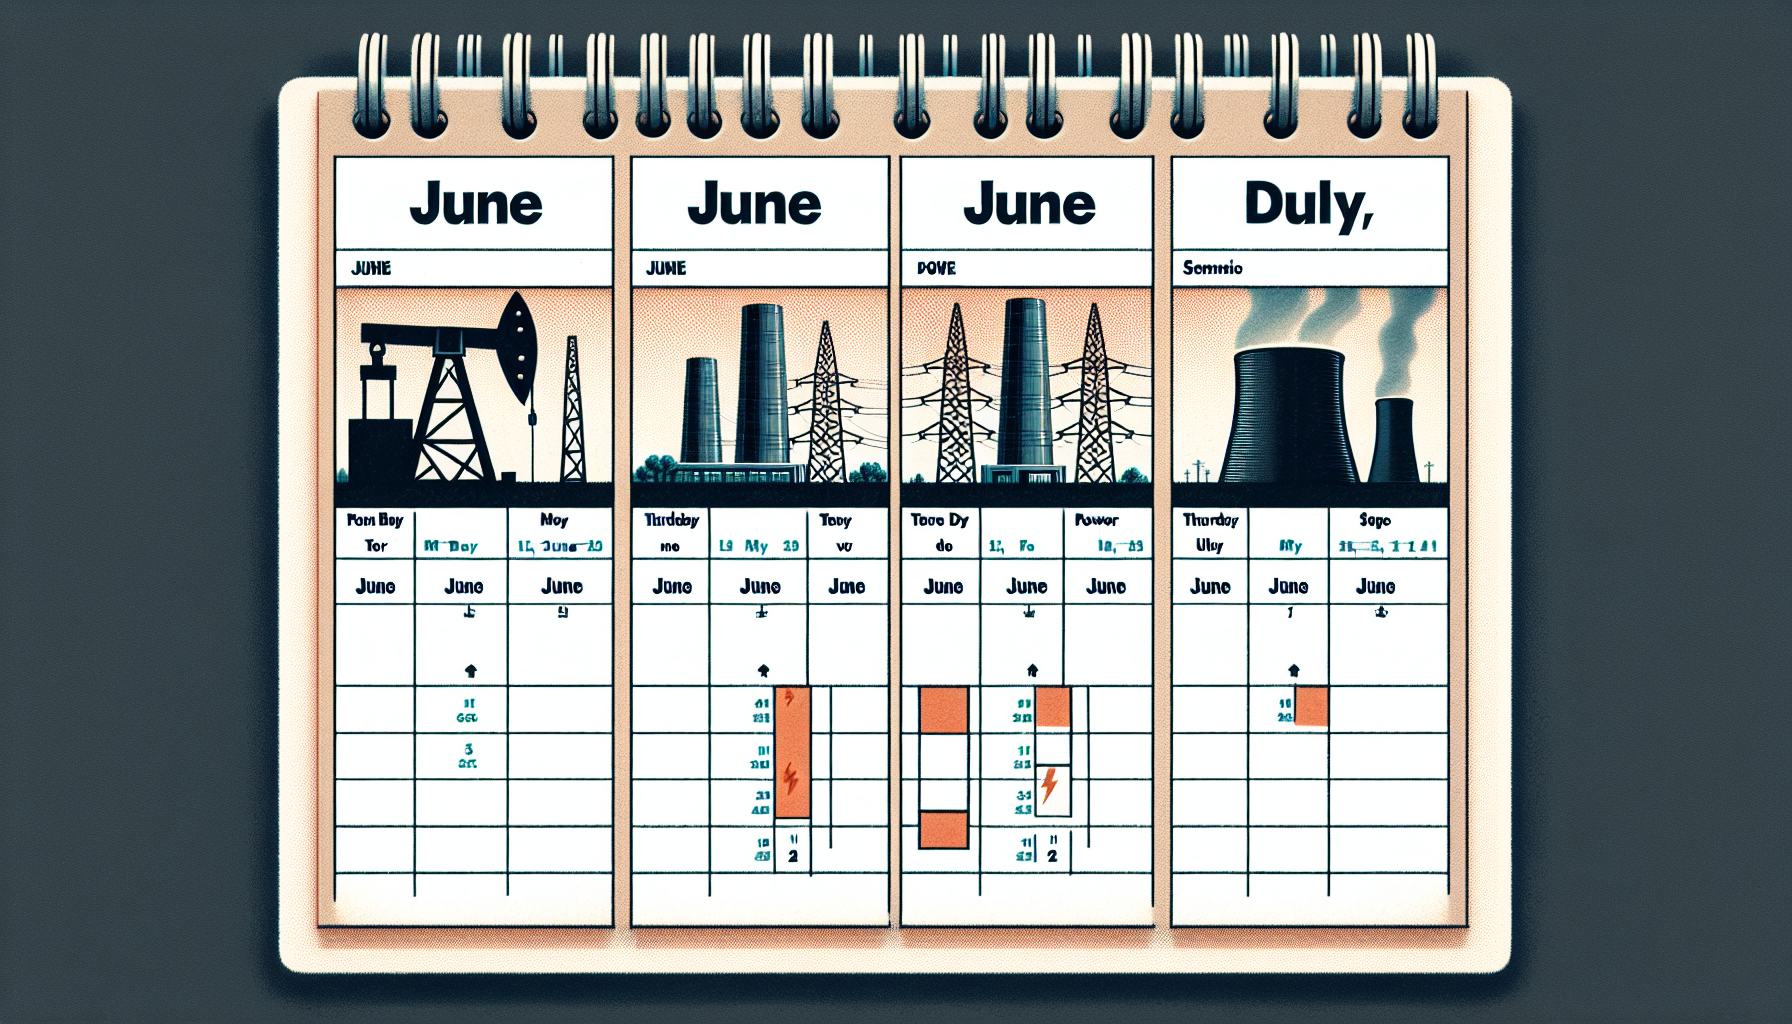 Calendário de distribuição de lucros de junho: Petrobras, Taesa e Cemig realizam pagamentos este mês, beneficiando acionistas. Acompanhe as datas e participe dos proventos!